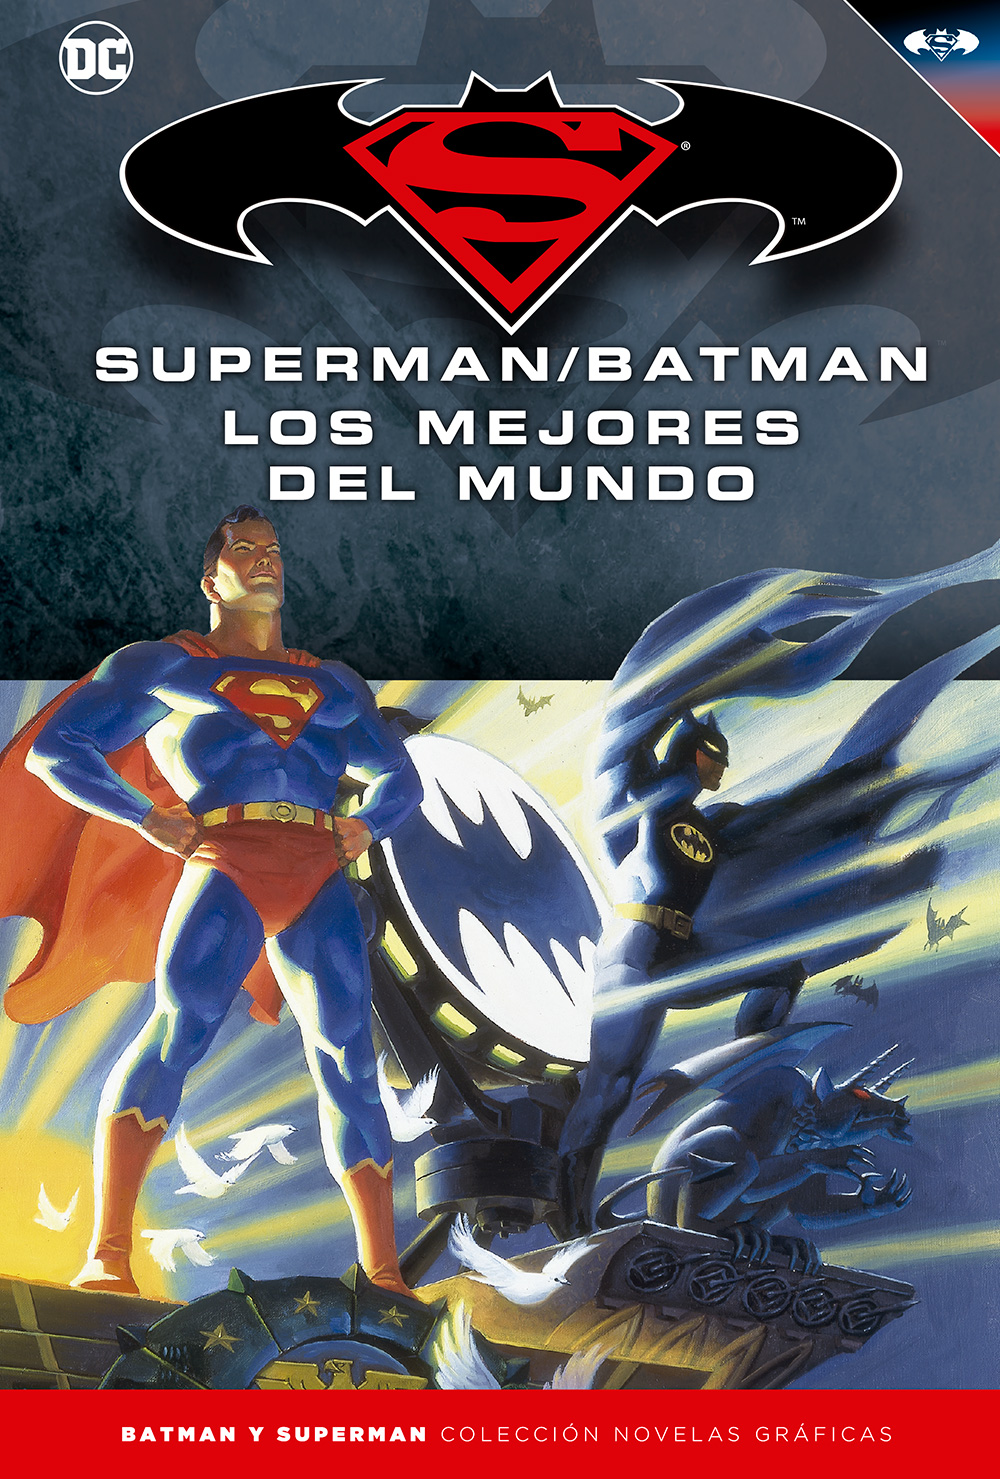 347 - [DC - Salvat] Batman y Superman: Colección Novelas Gráficas - Página 7 Portada_BMSM_16_LosMejoresdelMundo